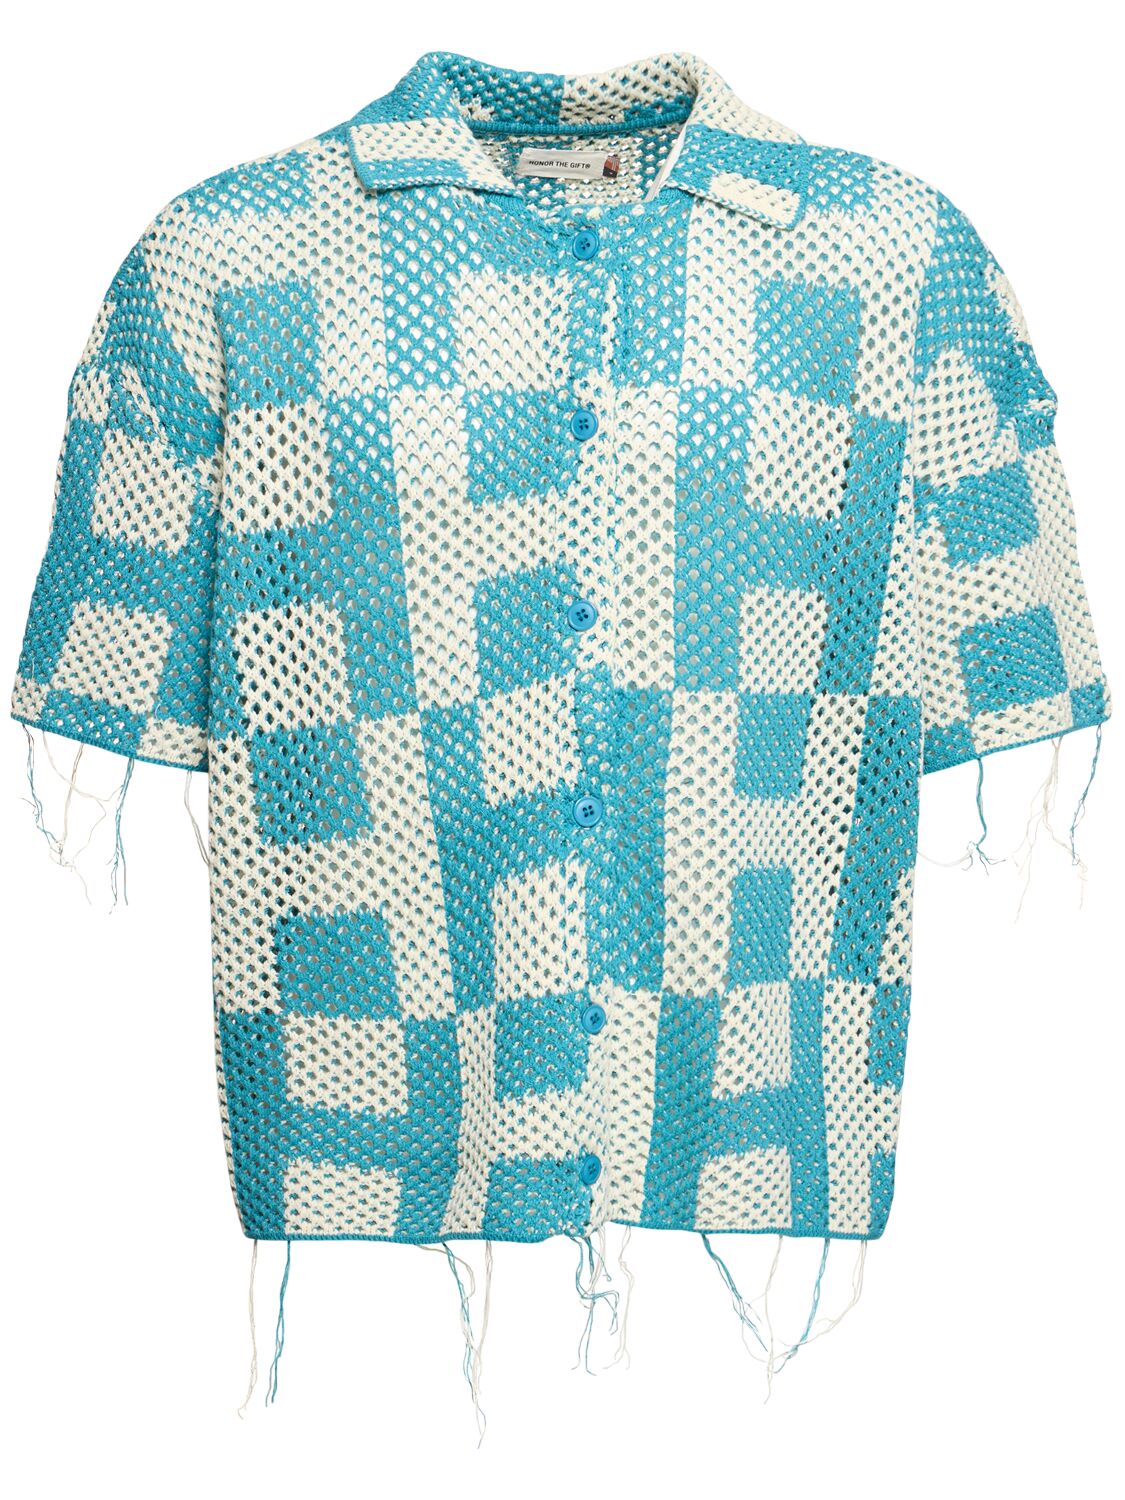 Women's Crochet Short Sleeve Shirt